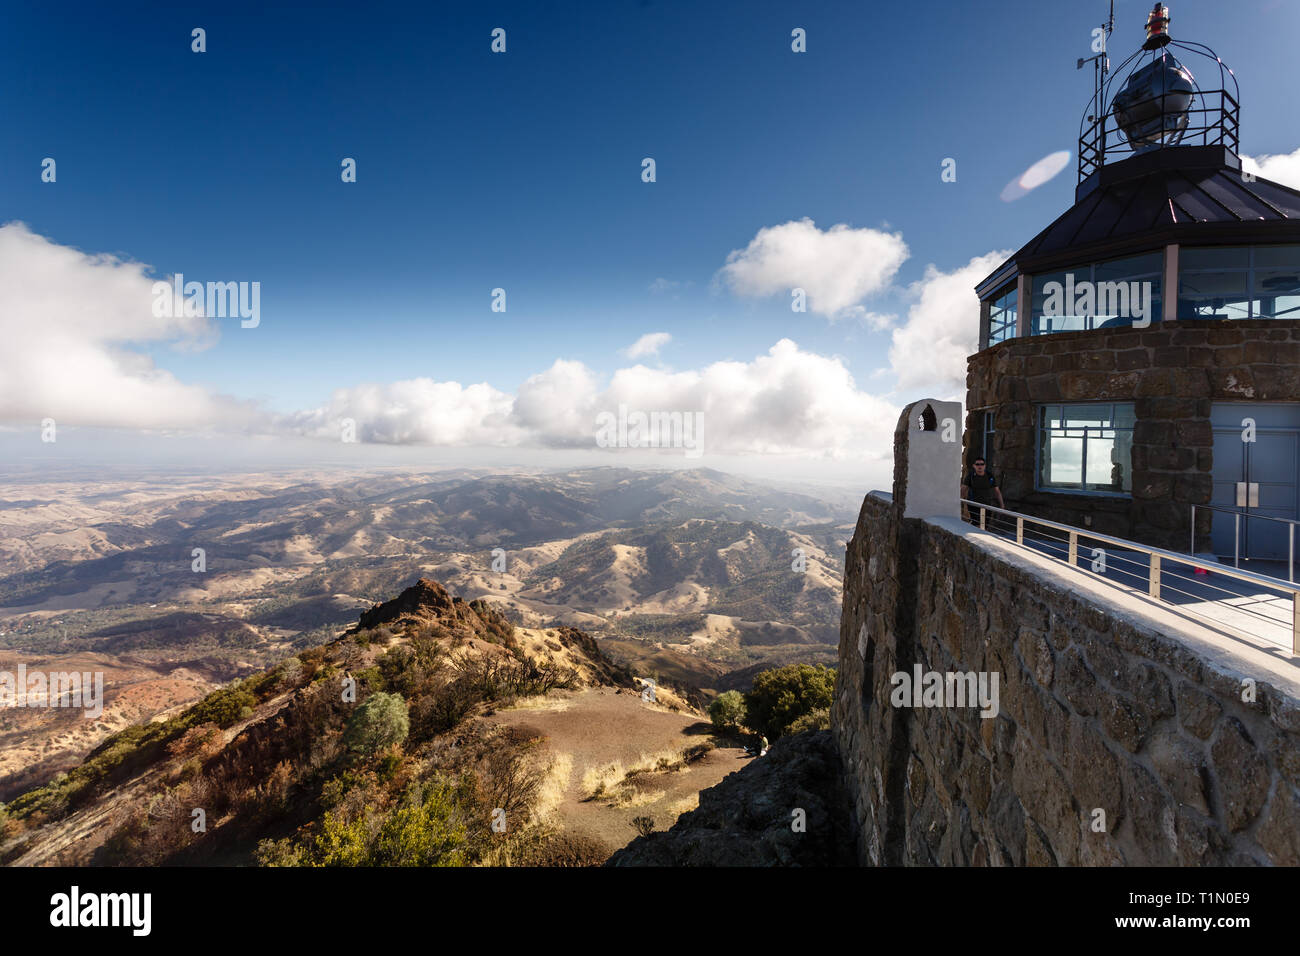 Vista dalla cima del monte Diablo torre di osservazione mostra nuvola ombreggiata estate arido paesaggio di colline e rilievi in posizione di parcheggio Foto Stock